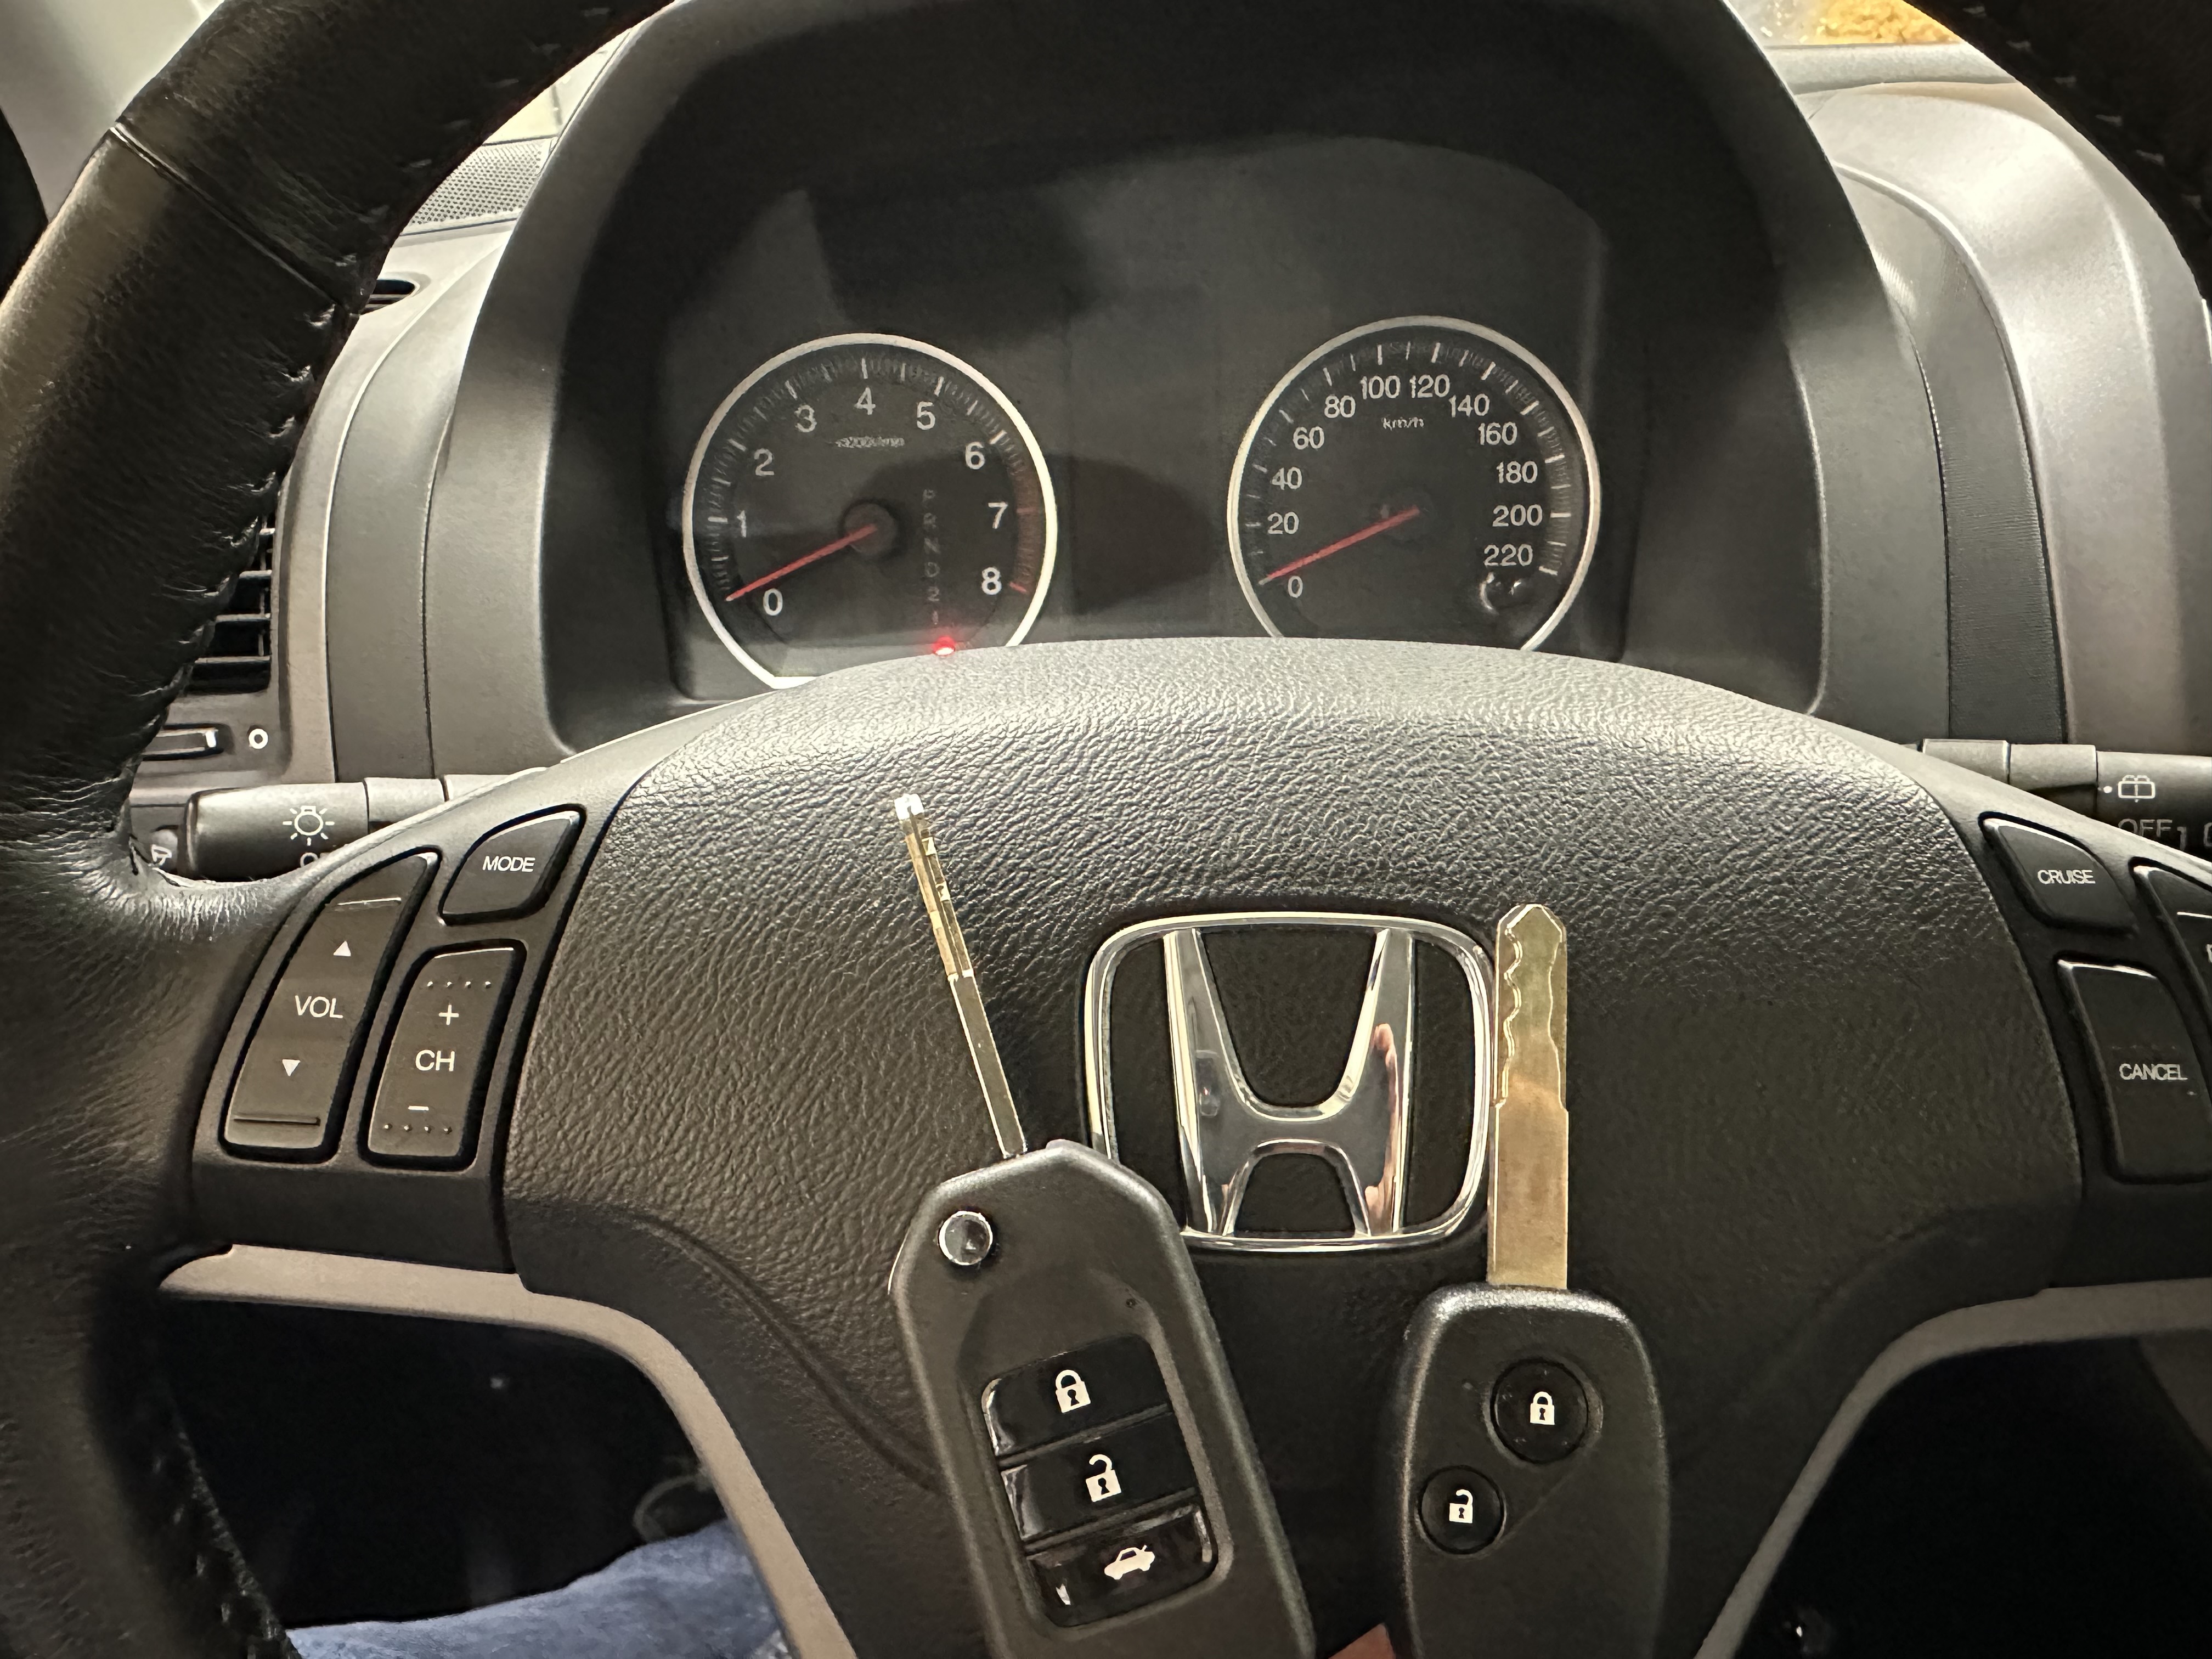 Изготовление выкидного ключа с кнопками Хонда срв 2008г.в., дубликат, нарезка, ремонт ключей